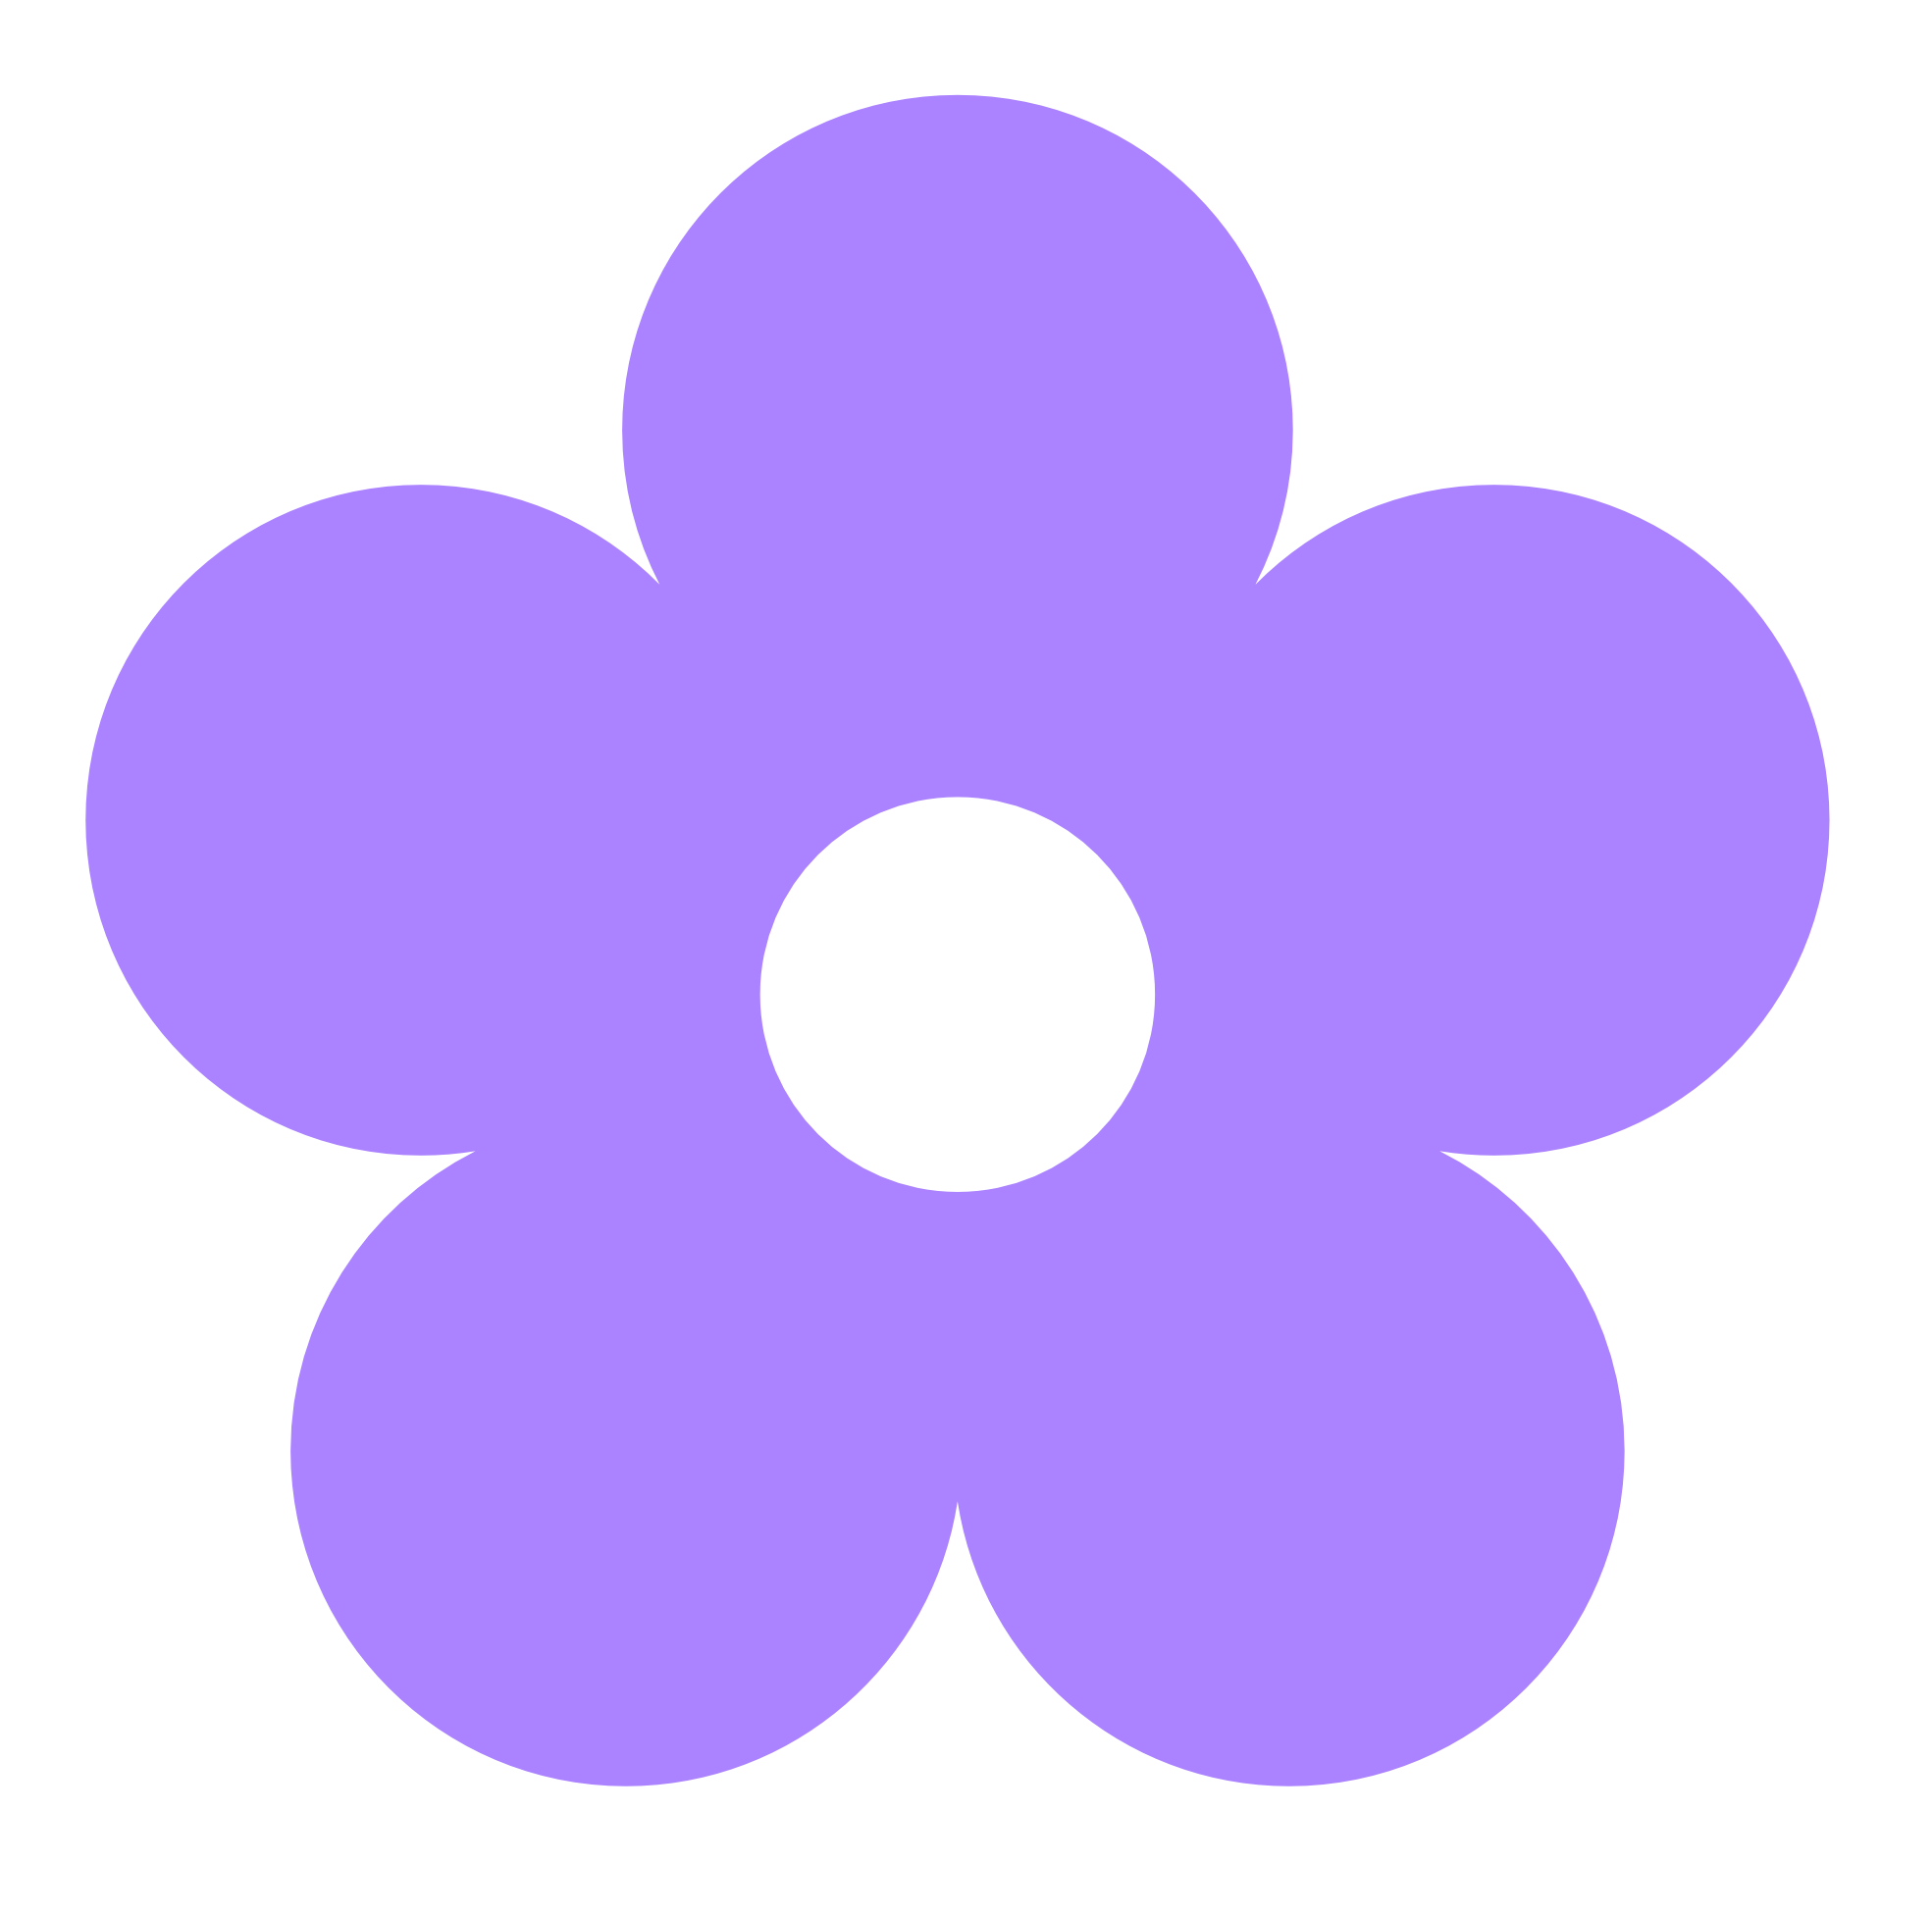 Purple flowers clip art